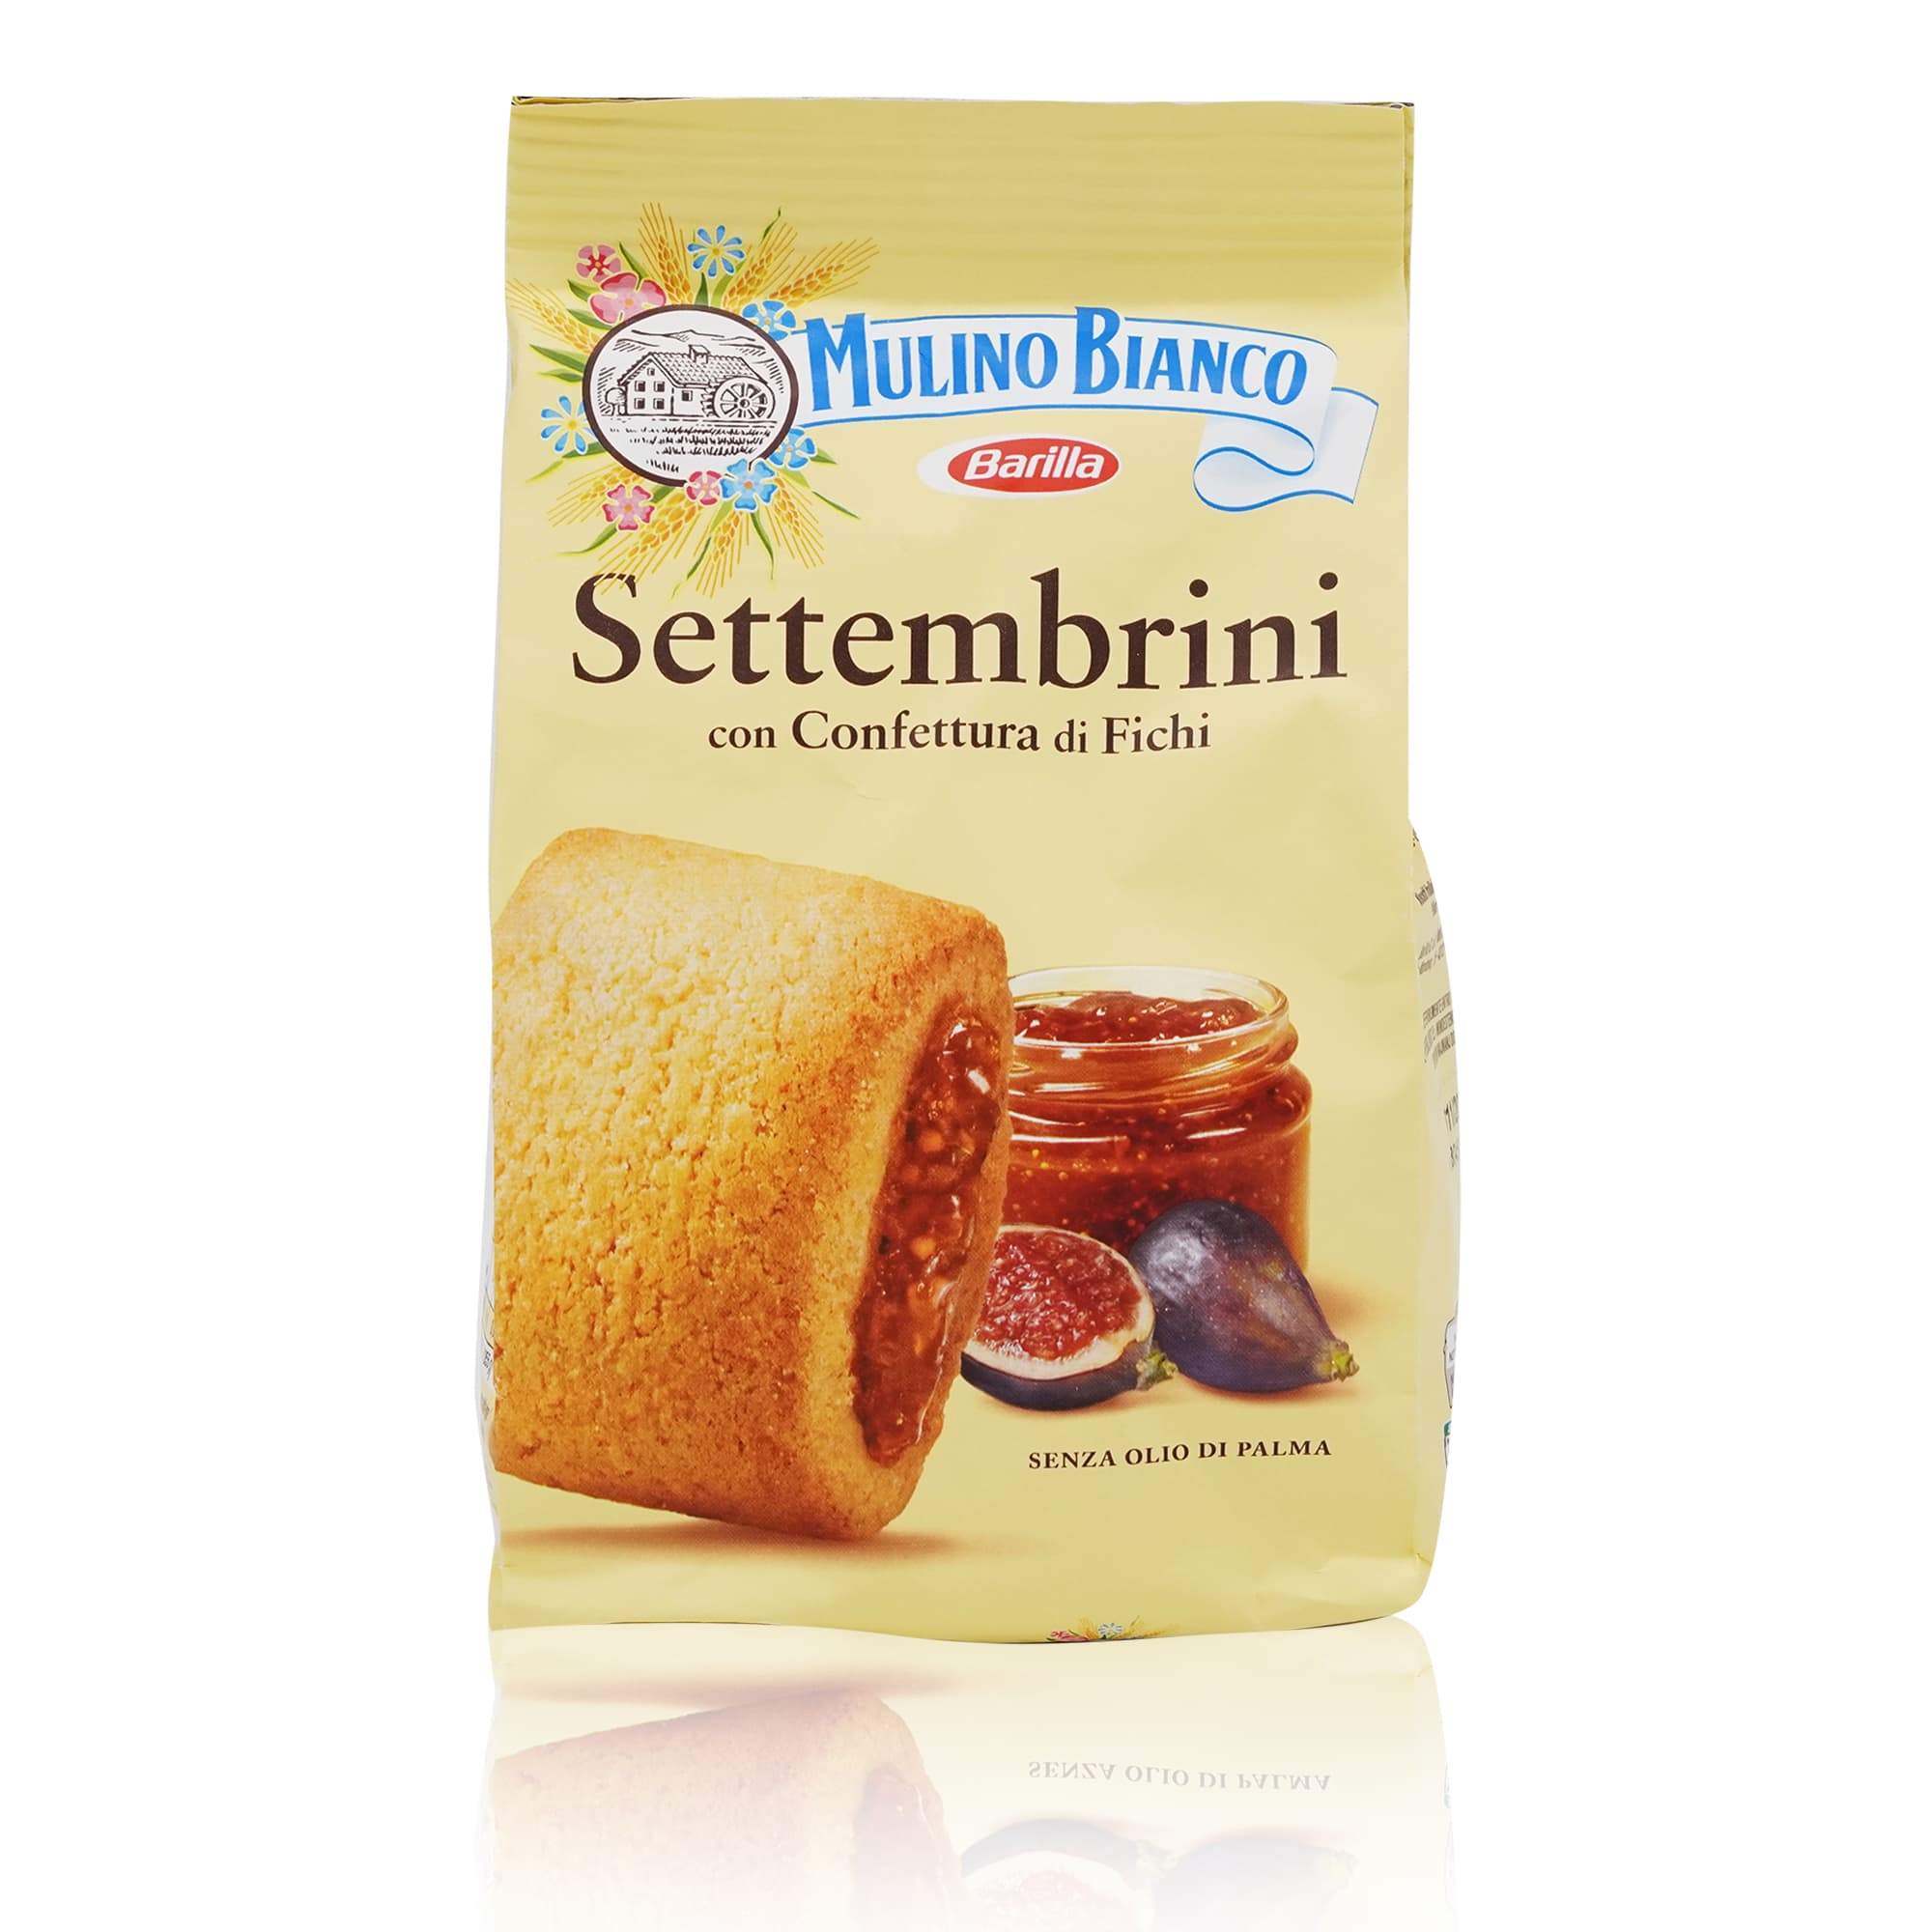 MULINO BIANCO Biscotti Settembrini Confettura Fichi – Kekse mit Feigenkonfitüre - 0,300kg - italienisch-einkaufen.de